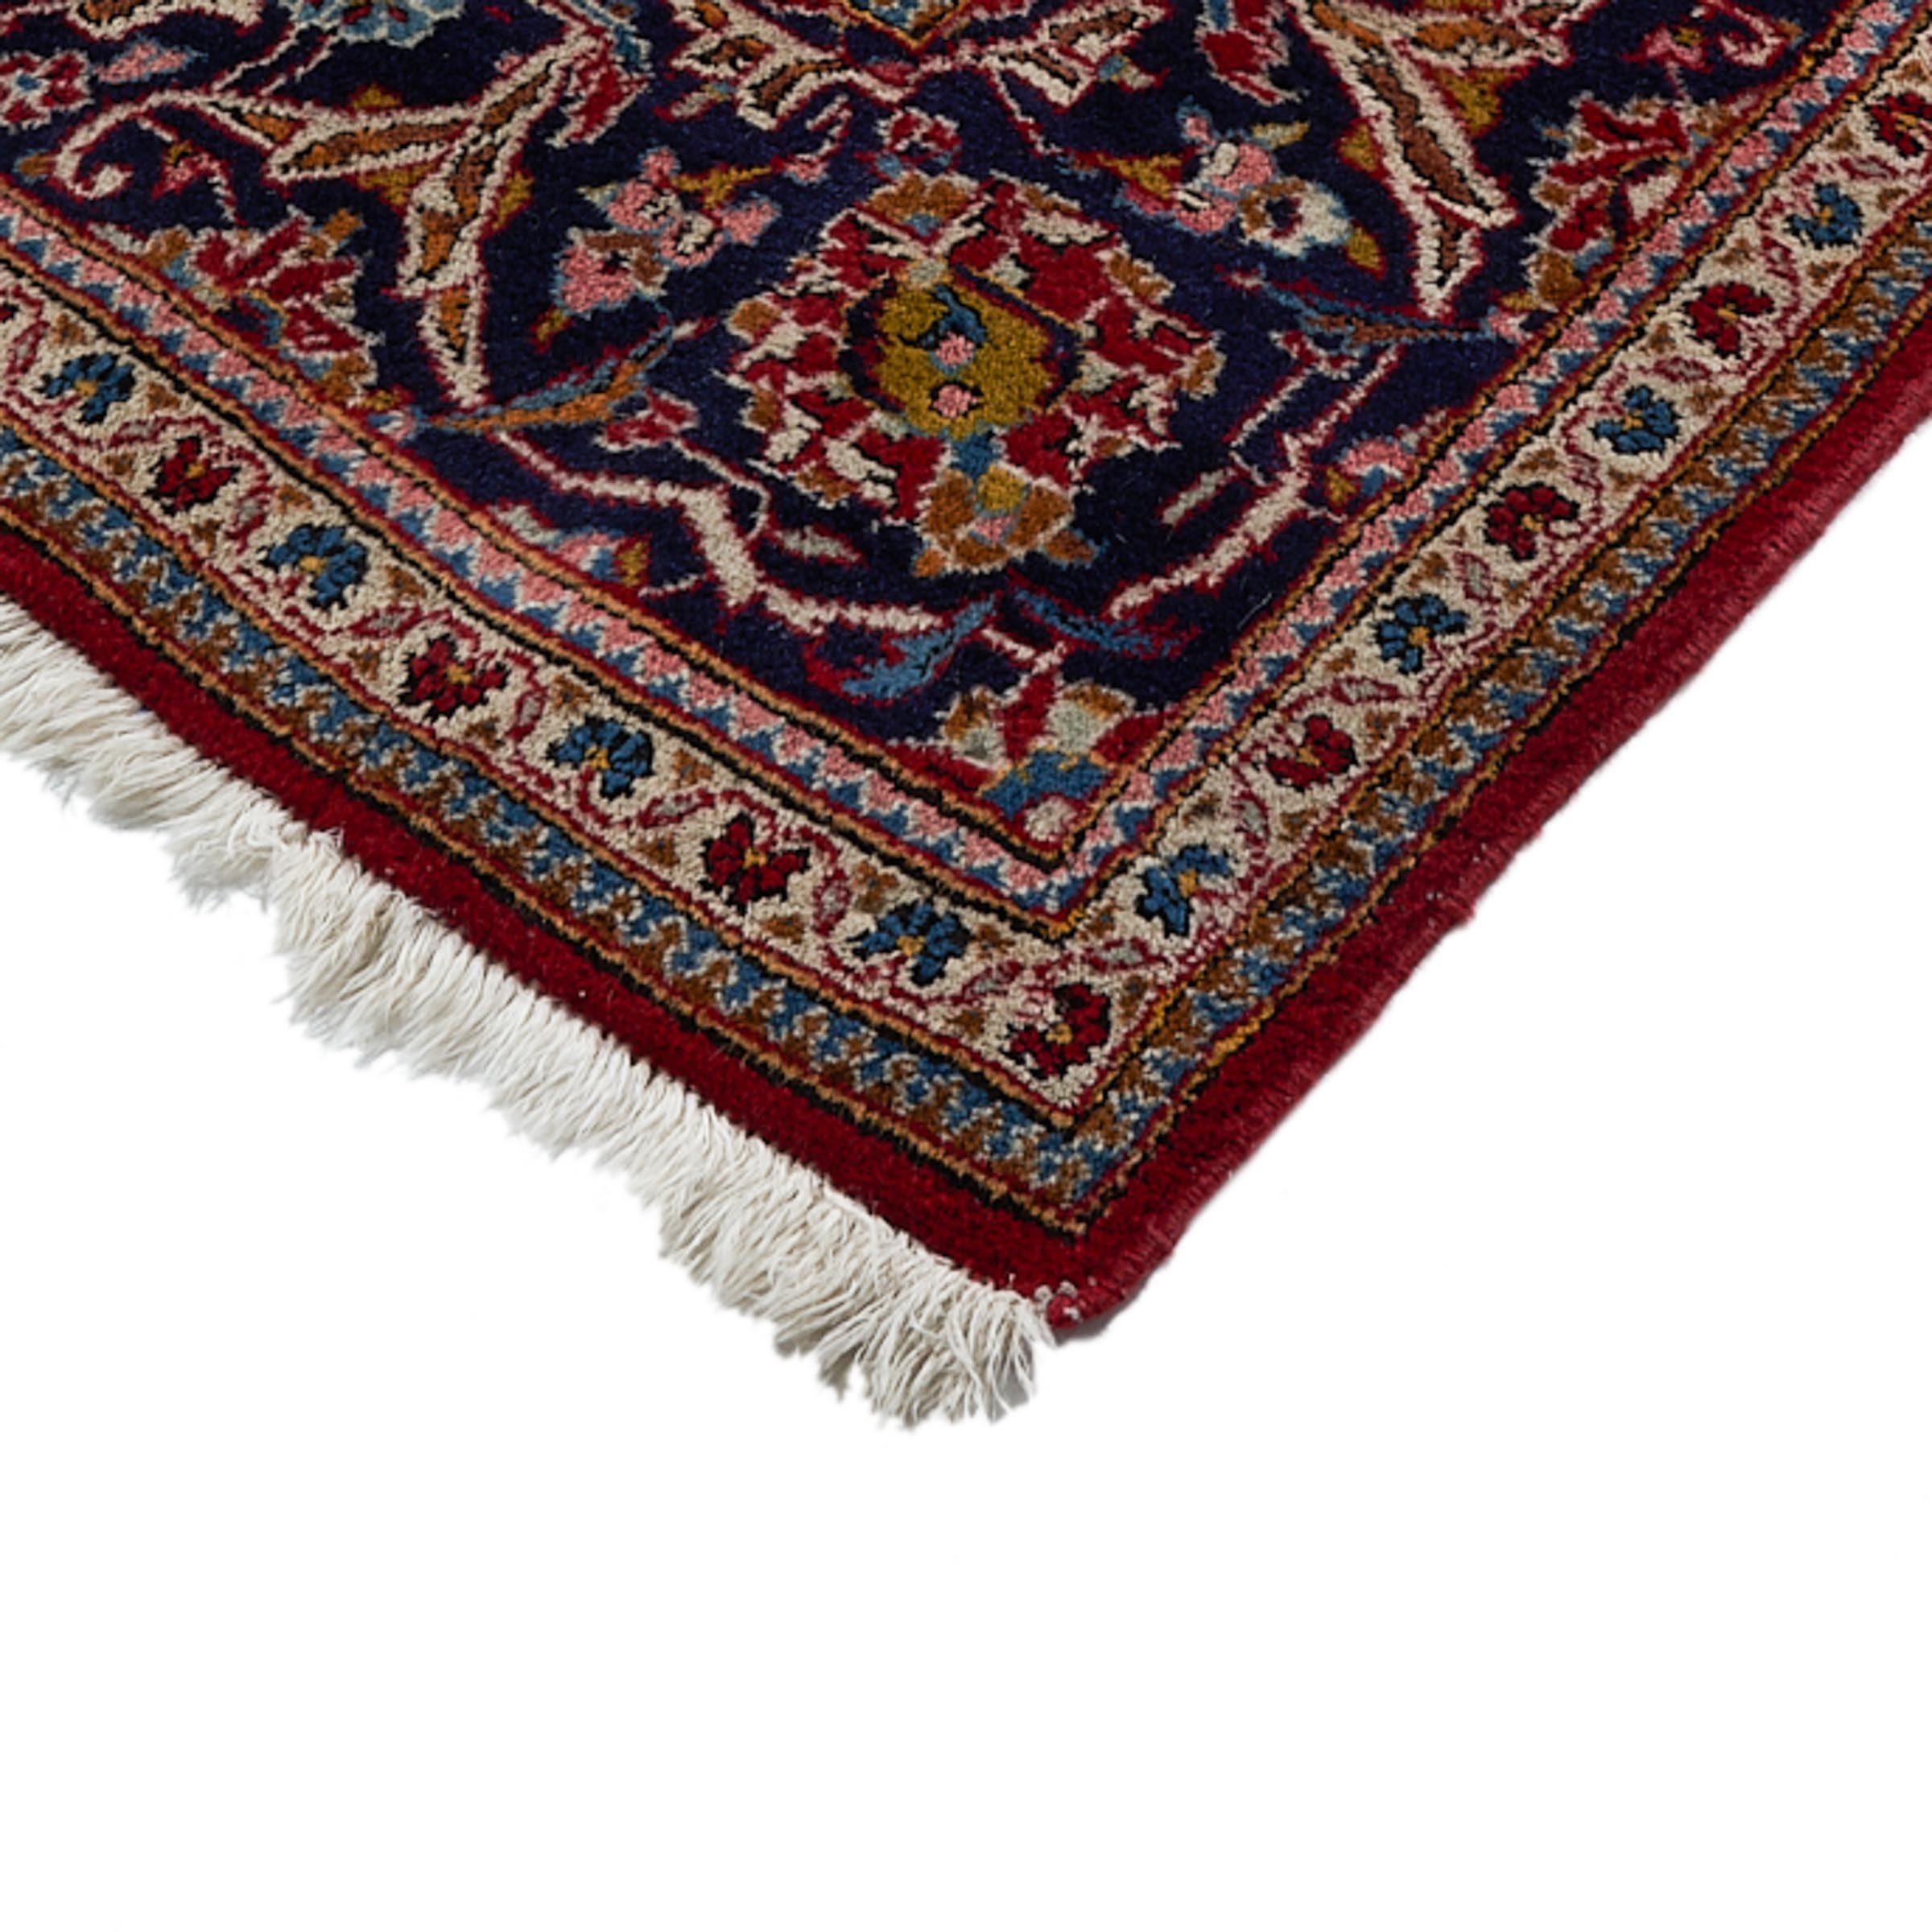 Kashan Carpet, Persian, c.1975